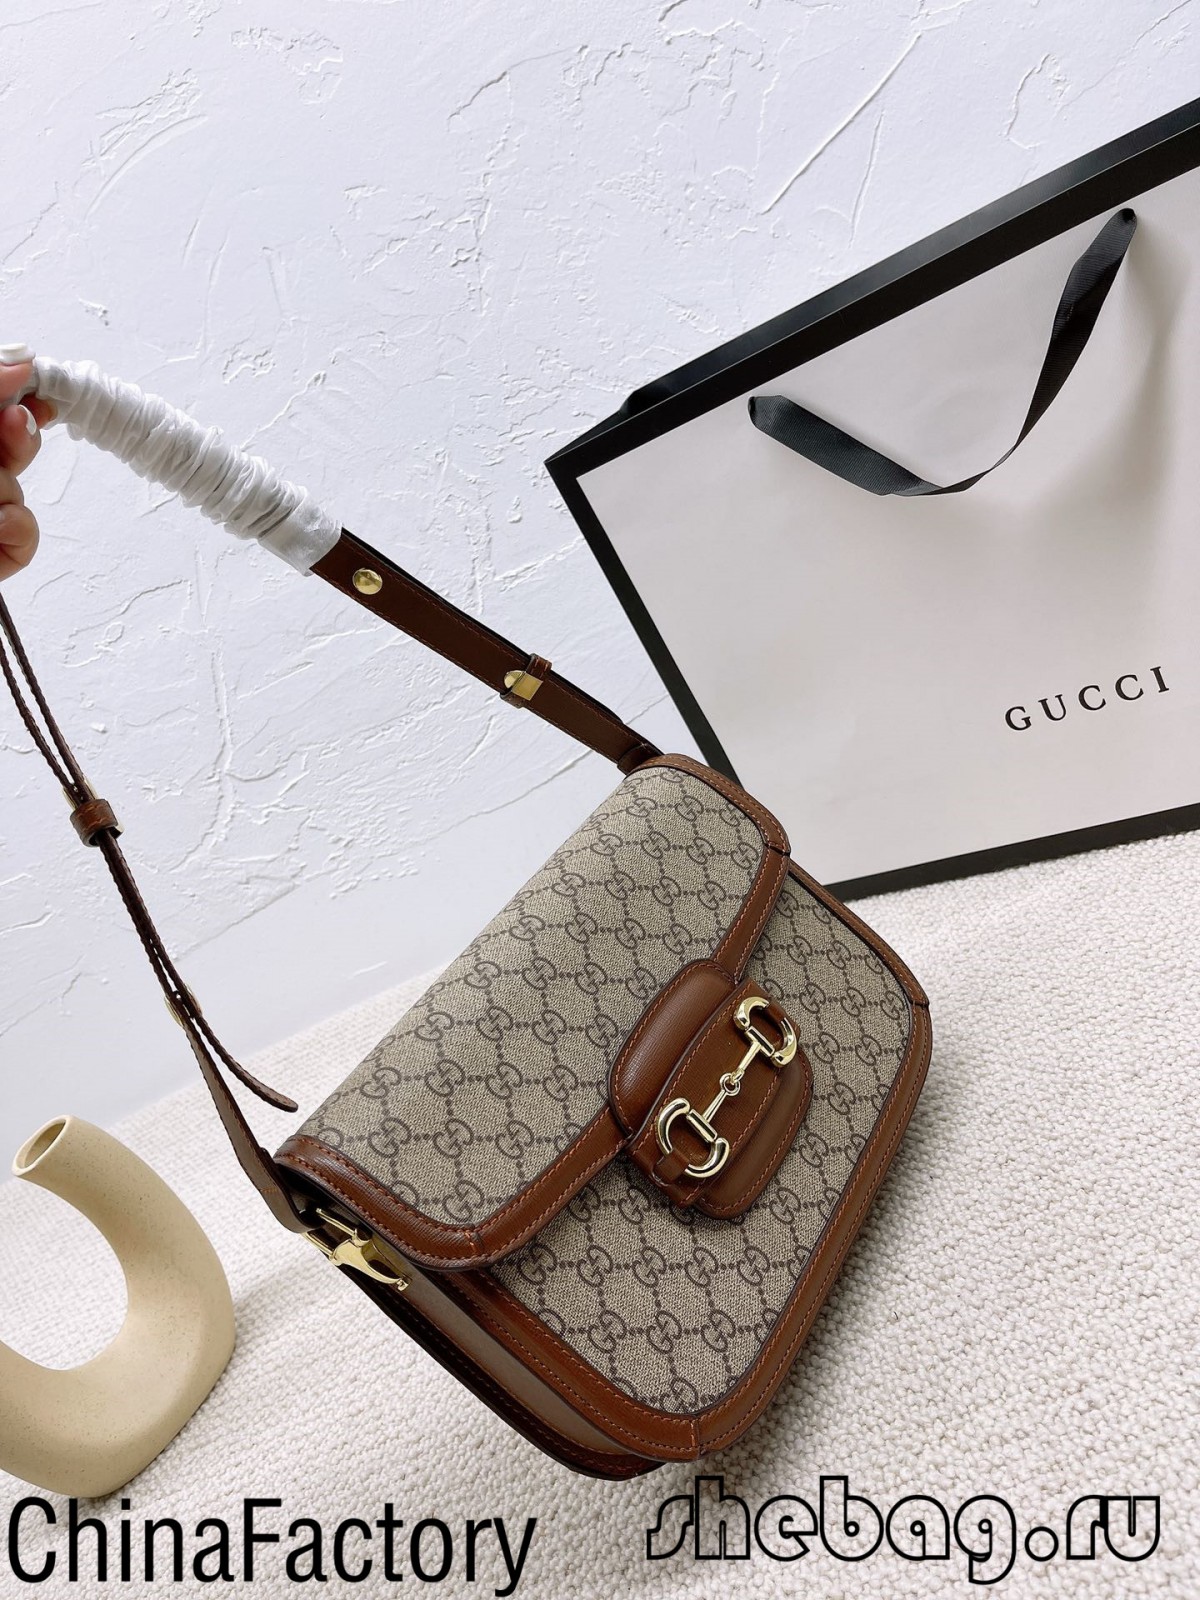 Koop vir Gucci-perde-boemelaarsak replika: Gucci 1955 (2022 warmste)-beste kwaliteit vals Louis Vuitton-sak aanlynwinkel, replika ontwerpersak ru